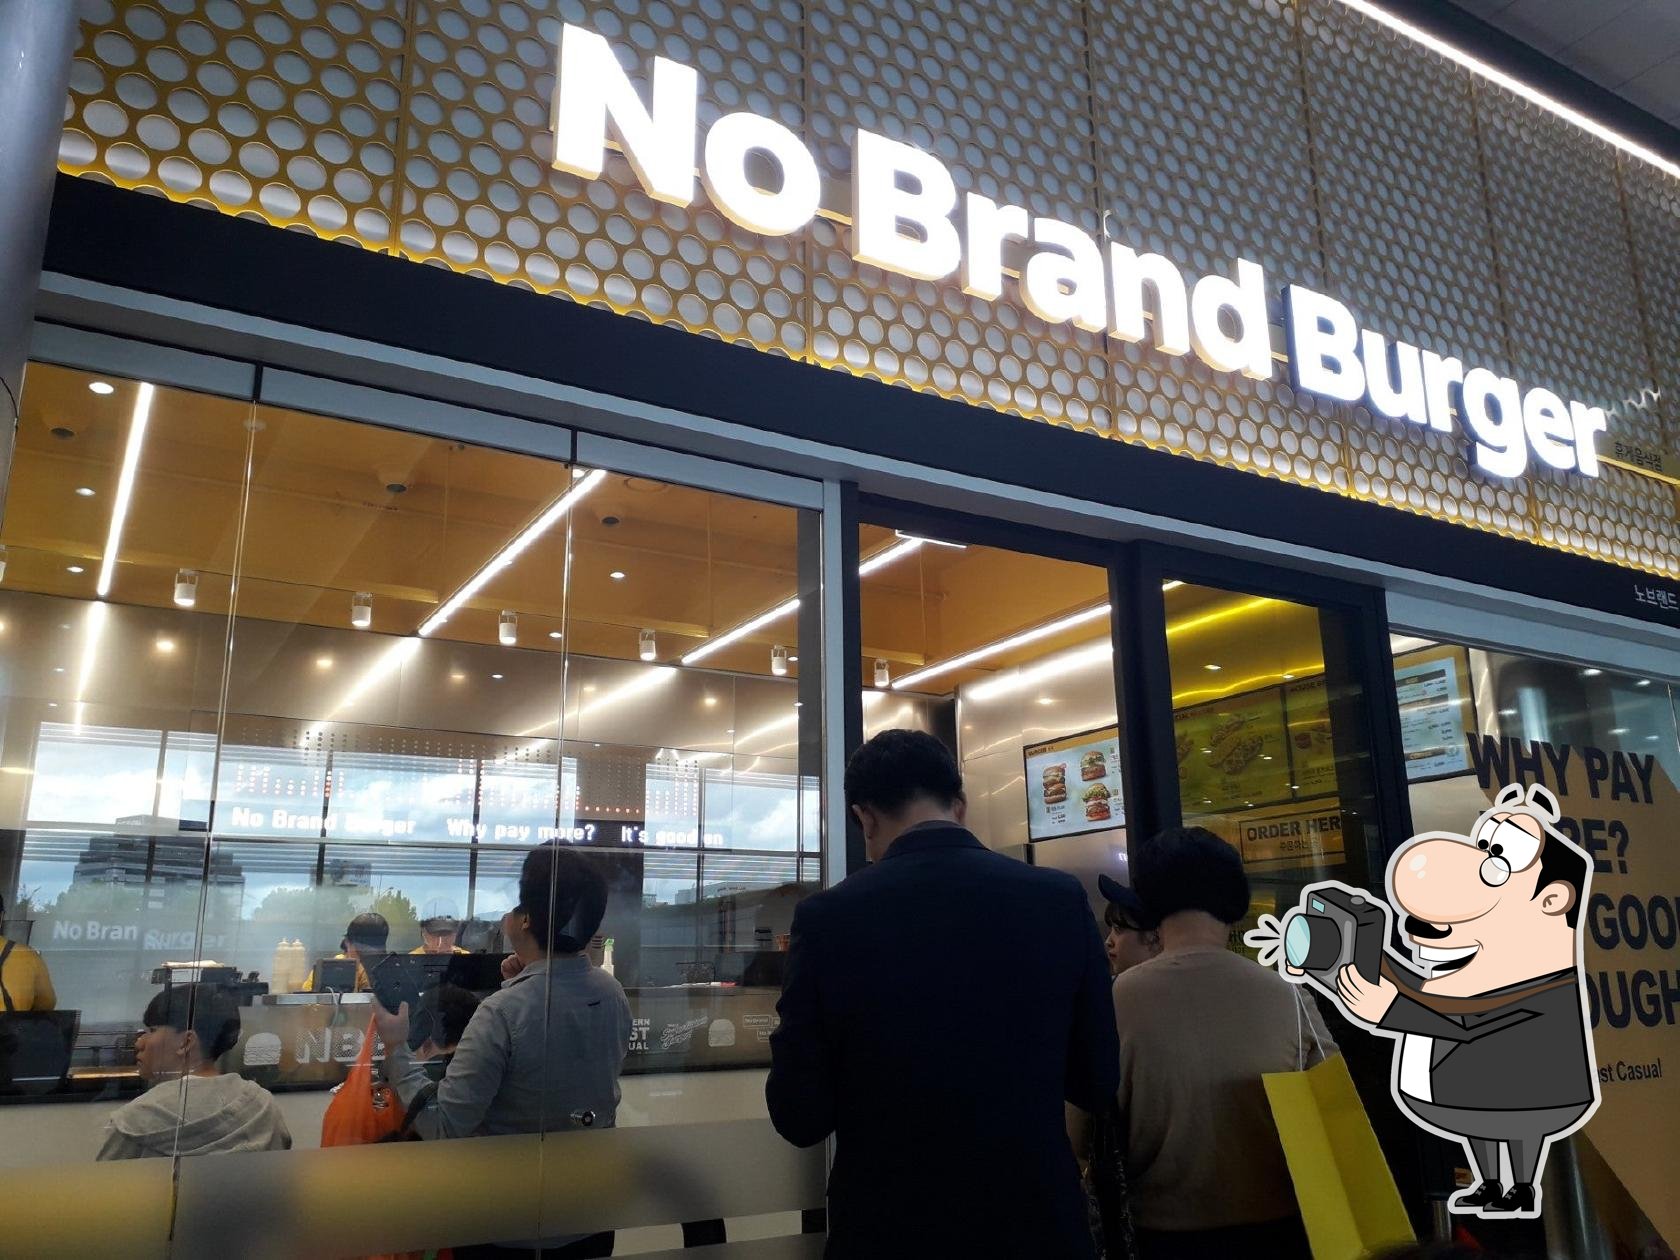 https://img.restaurantguru.com/r16a-No-Brand-Burger-COEX-view-2021-09-2515.jpg